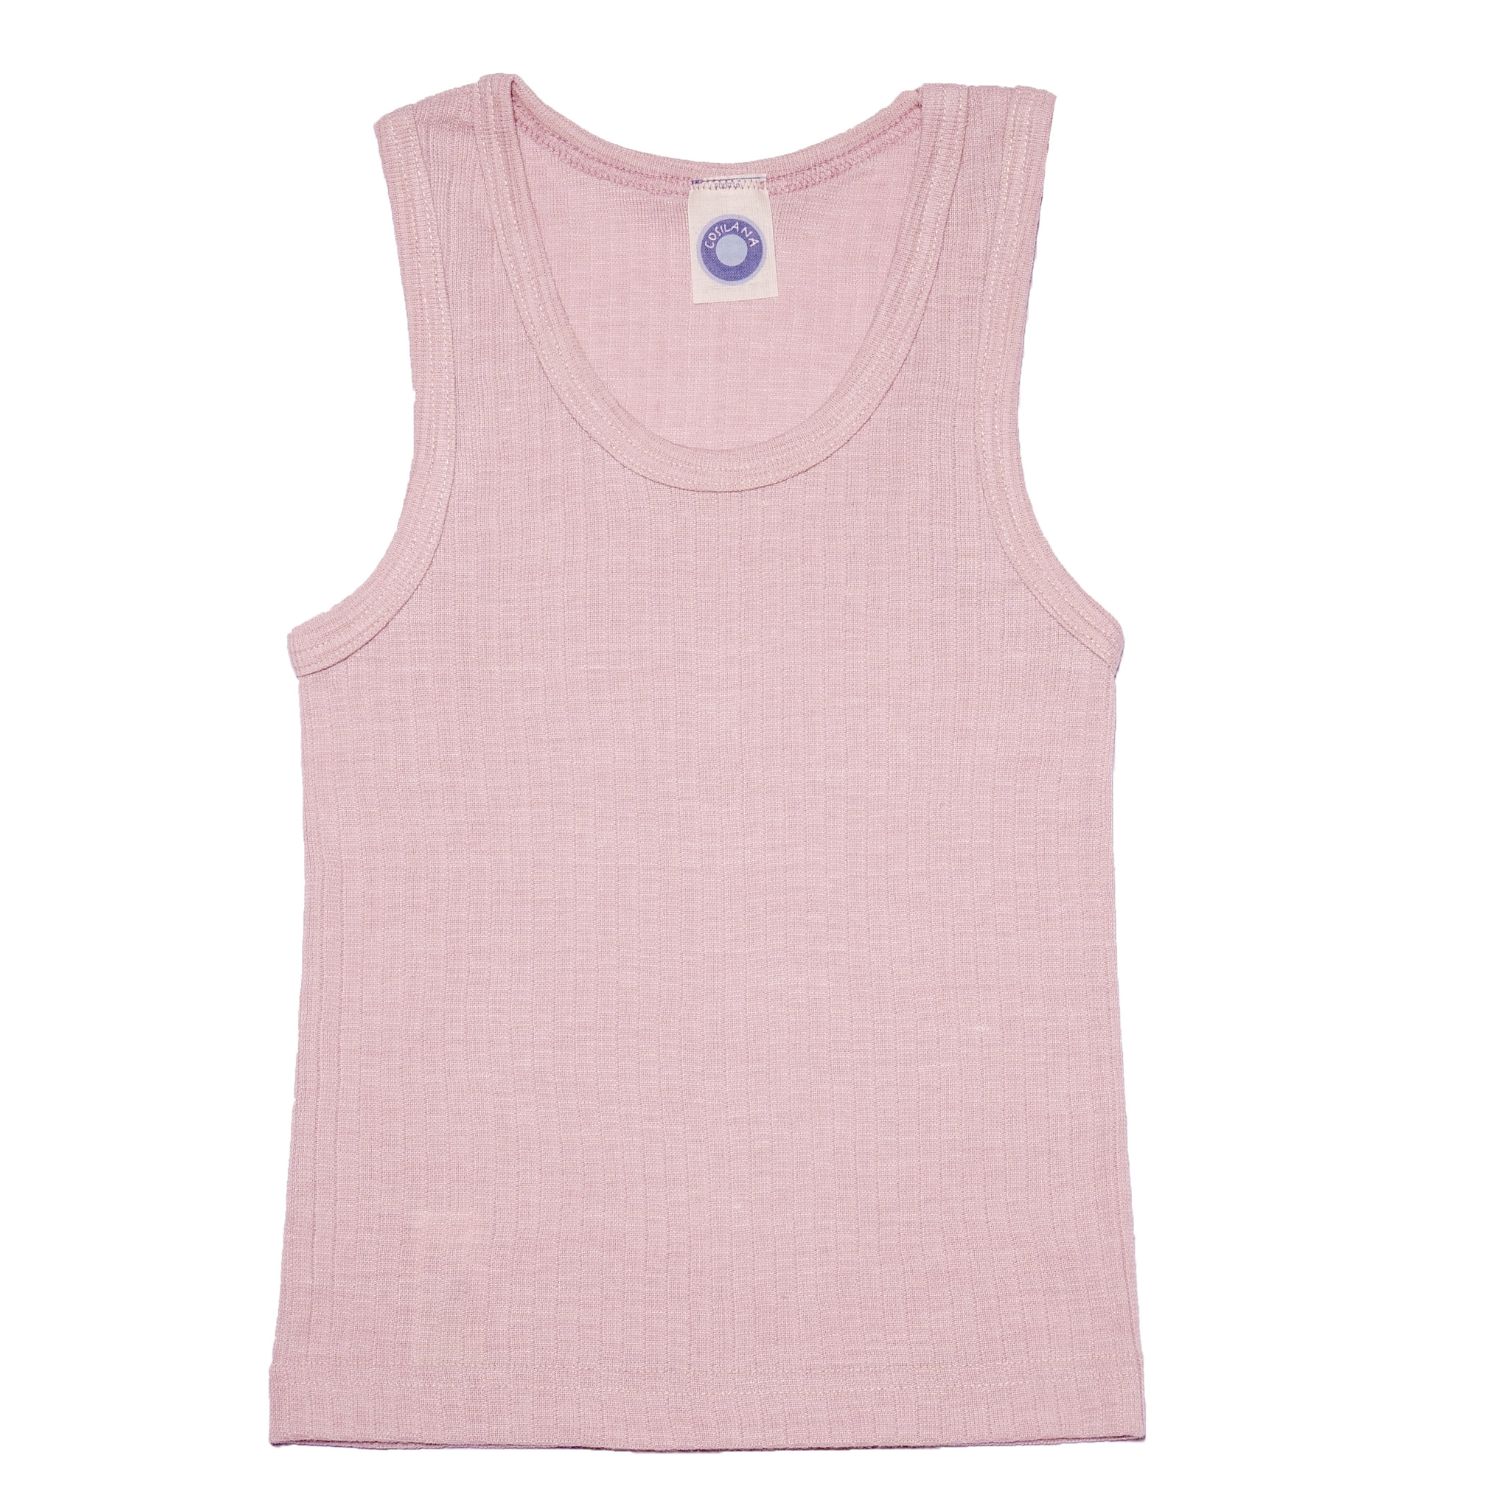 Cosilana Kinder-Unterhemd ohne Arm aus Baumwolle/Wolle/Seide